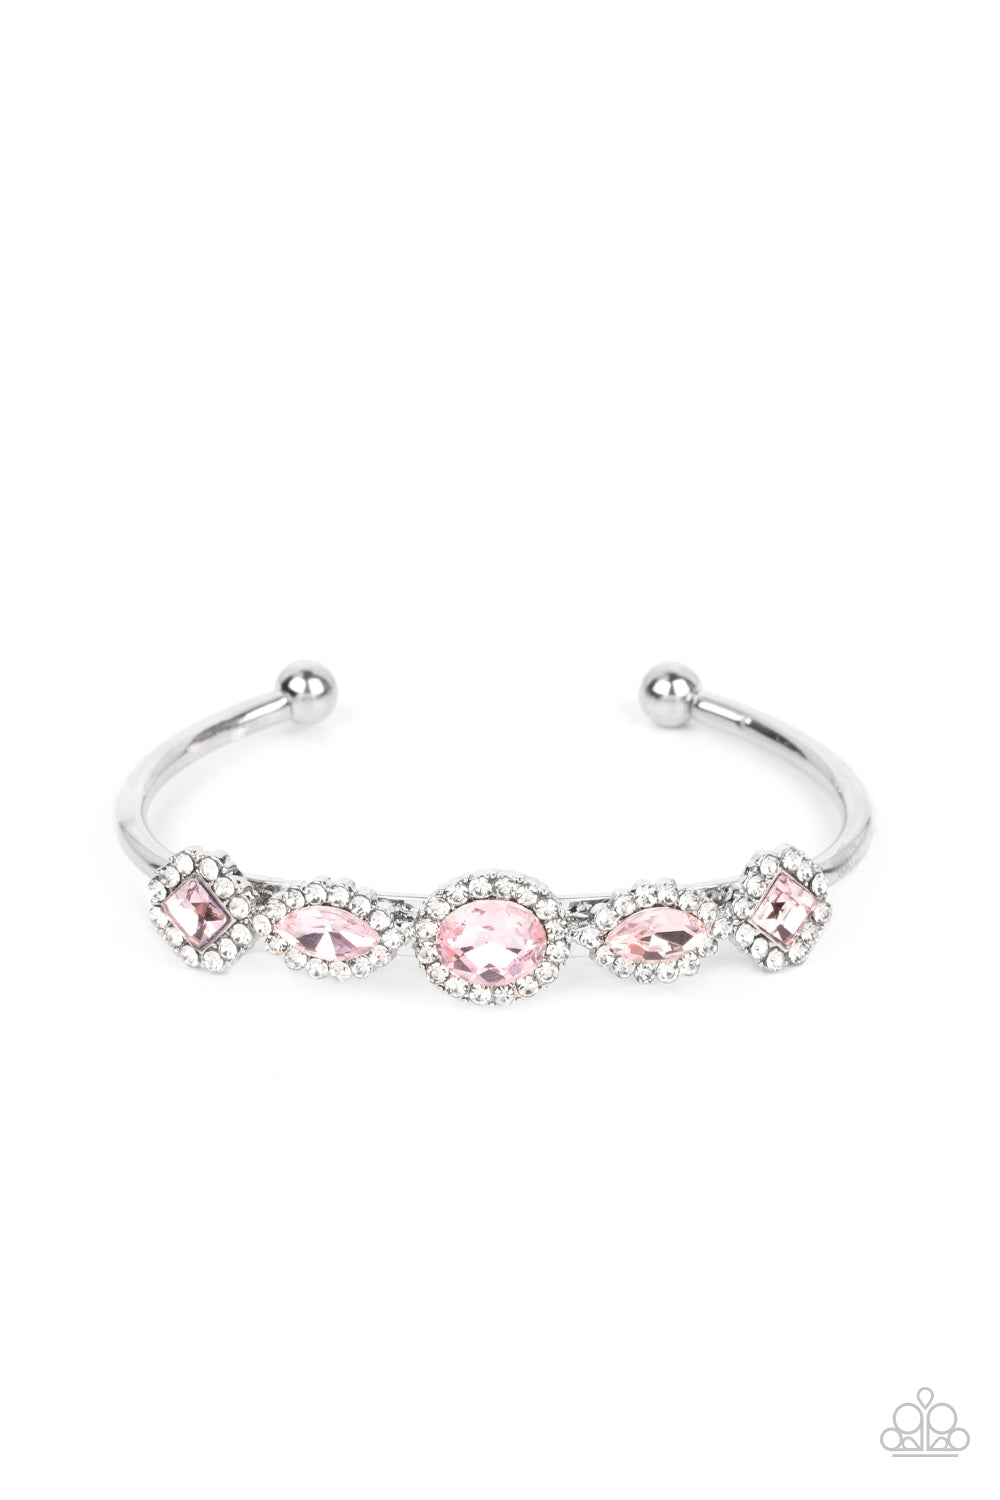 Bracelet, Sensitive Skin, Hypoallergenic Jewelry, pink, cuff bracelet